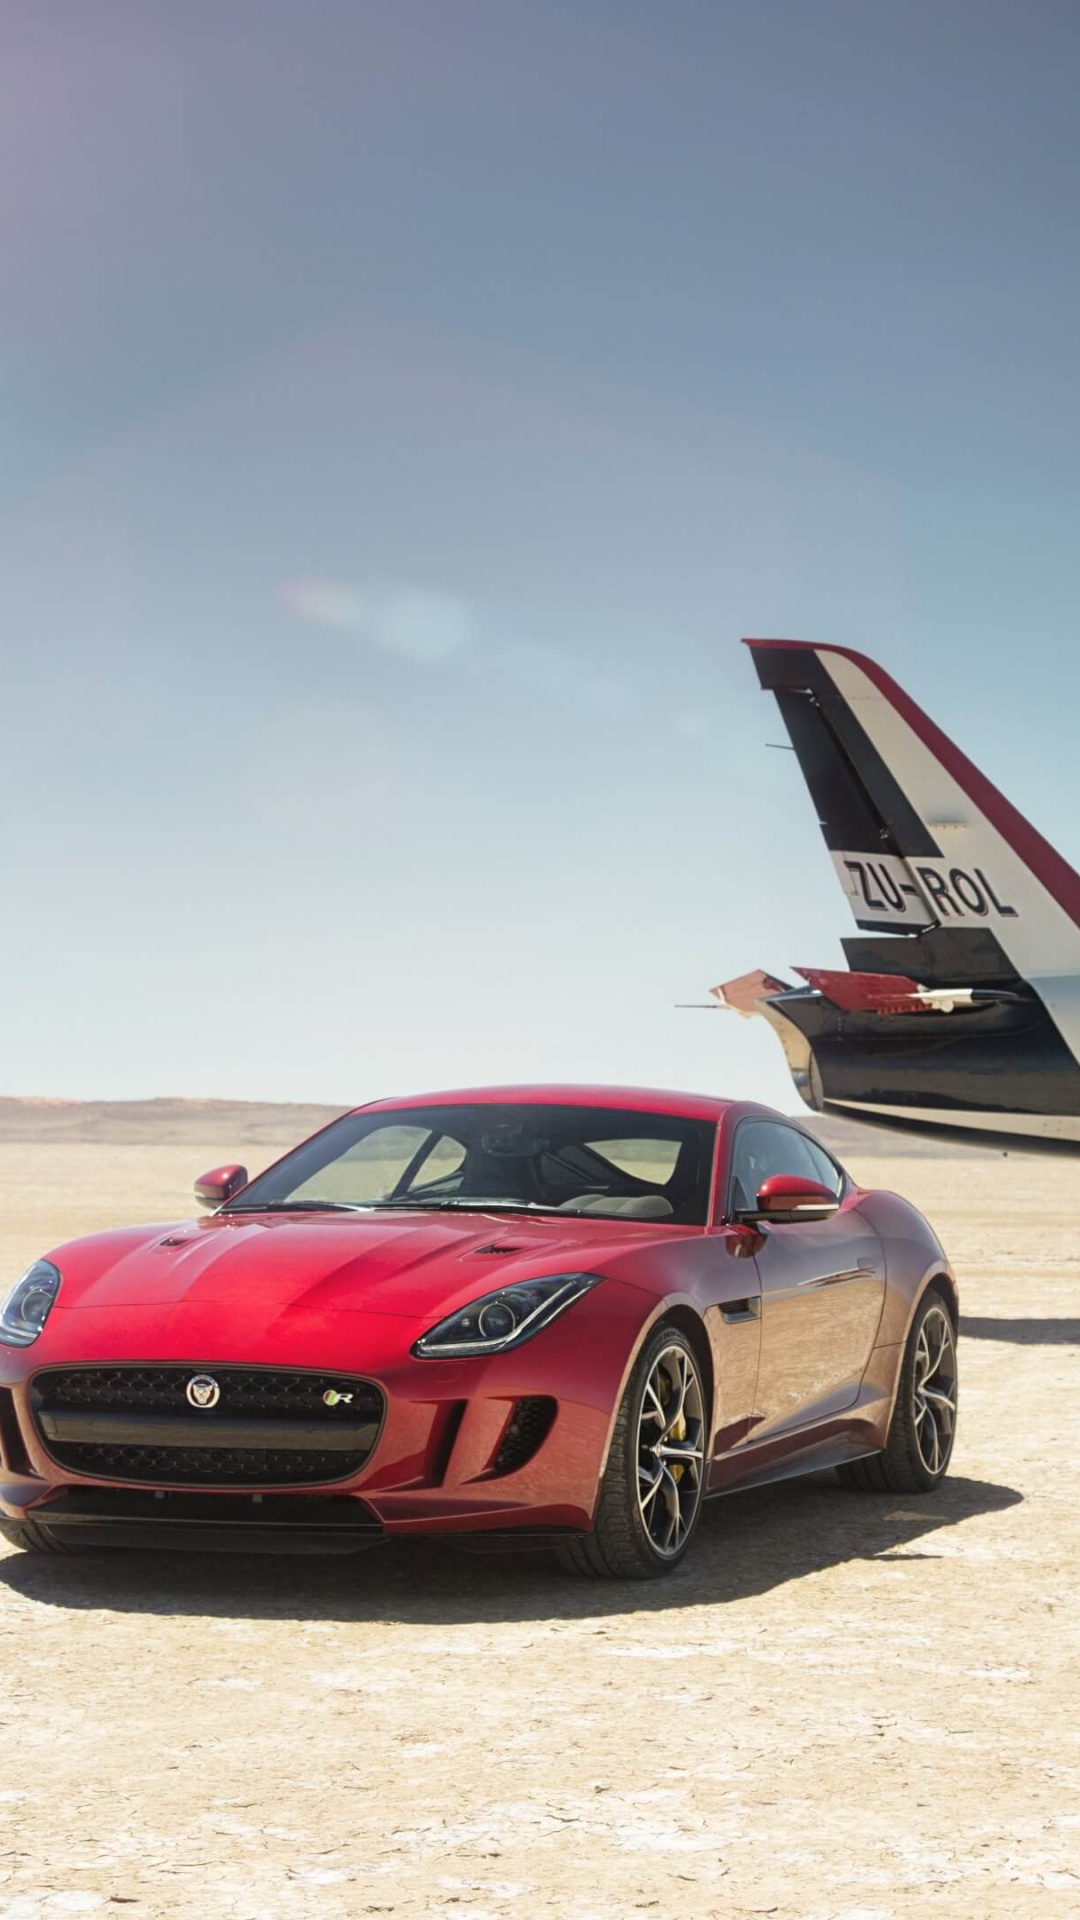 Jaguar Cars, Jaguar, Car, Airplane, Sports Car. Wallpaper in 1080x1920 Resolution